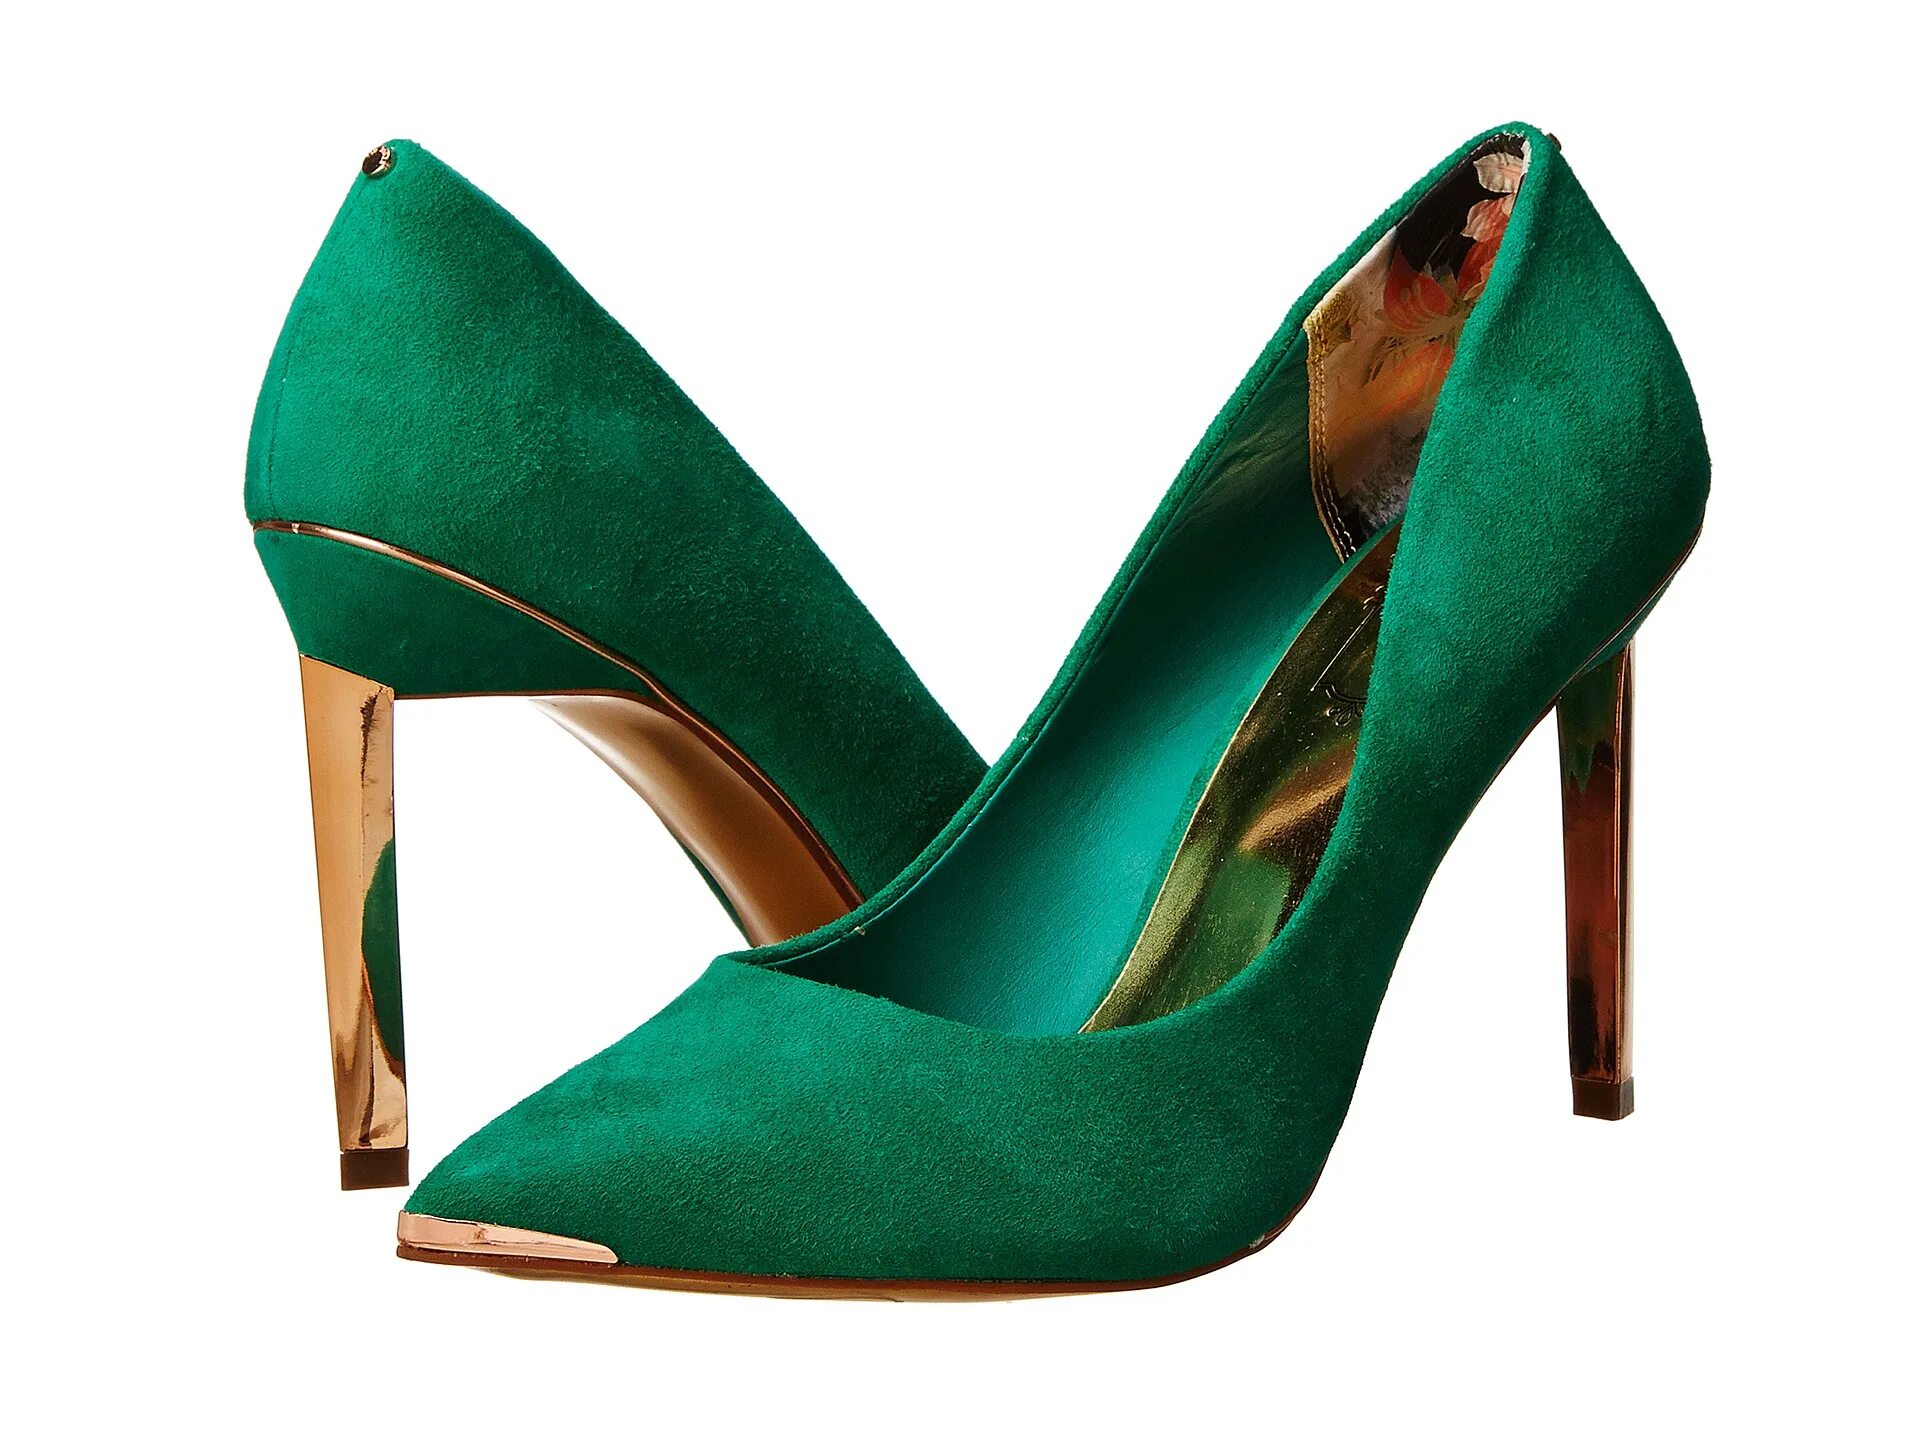 Обувь green. Зеленые туфли. Зелёные туфли на каблуке. Салатовые туфли. Женские зеленые туфли.